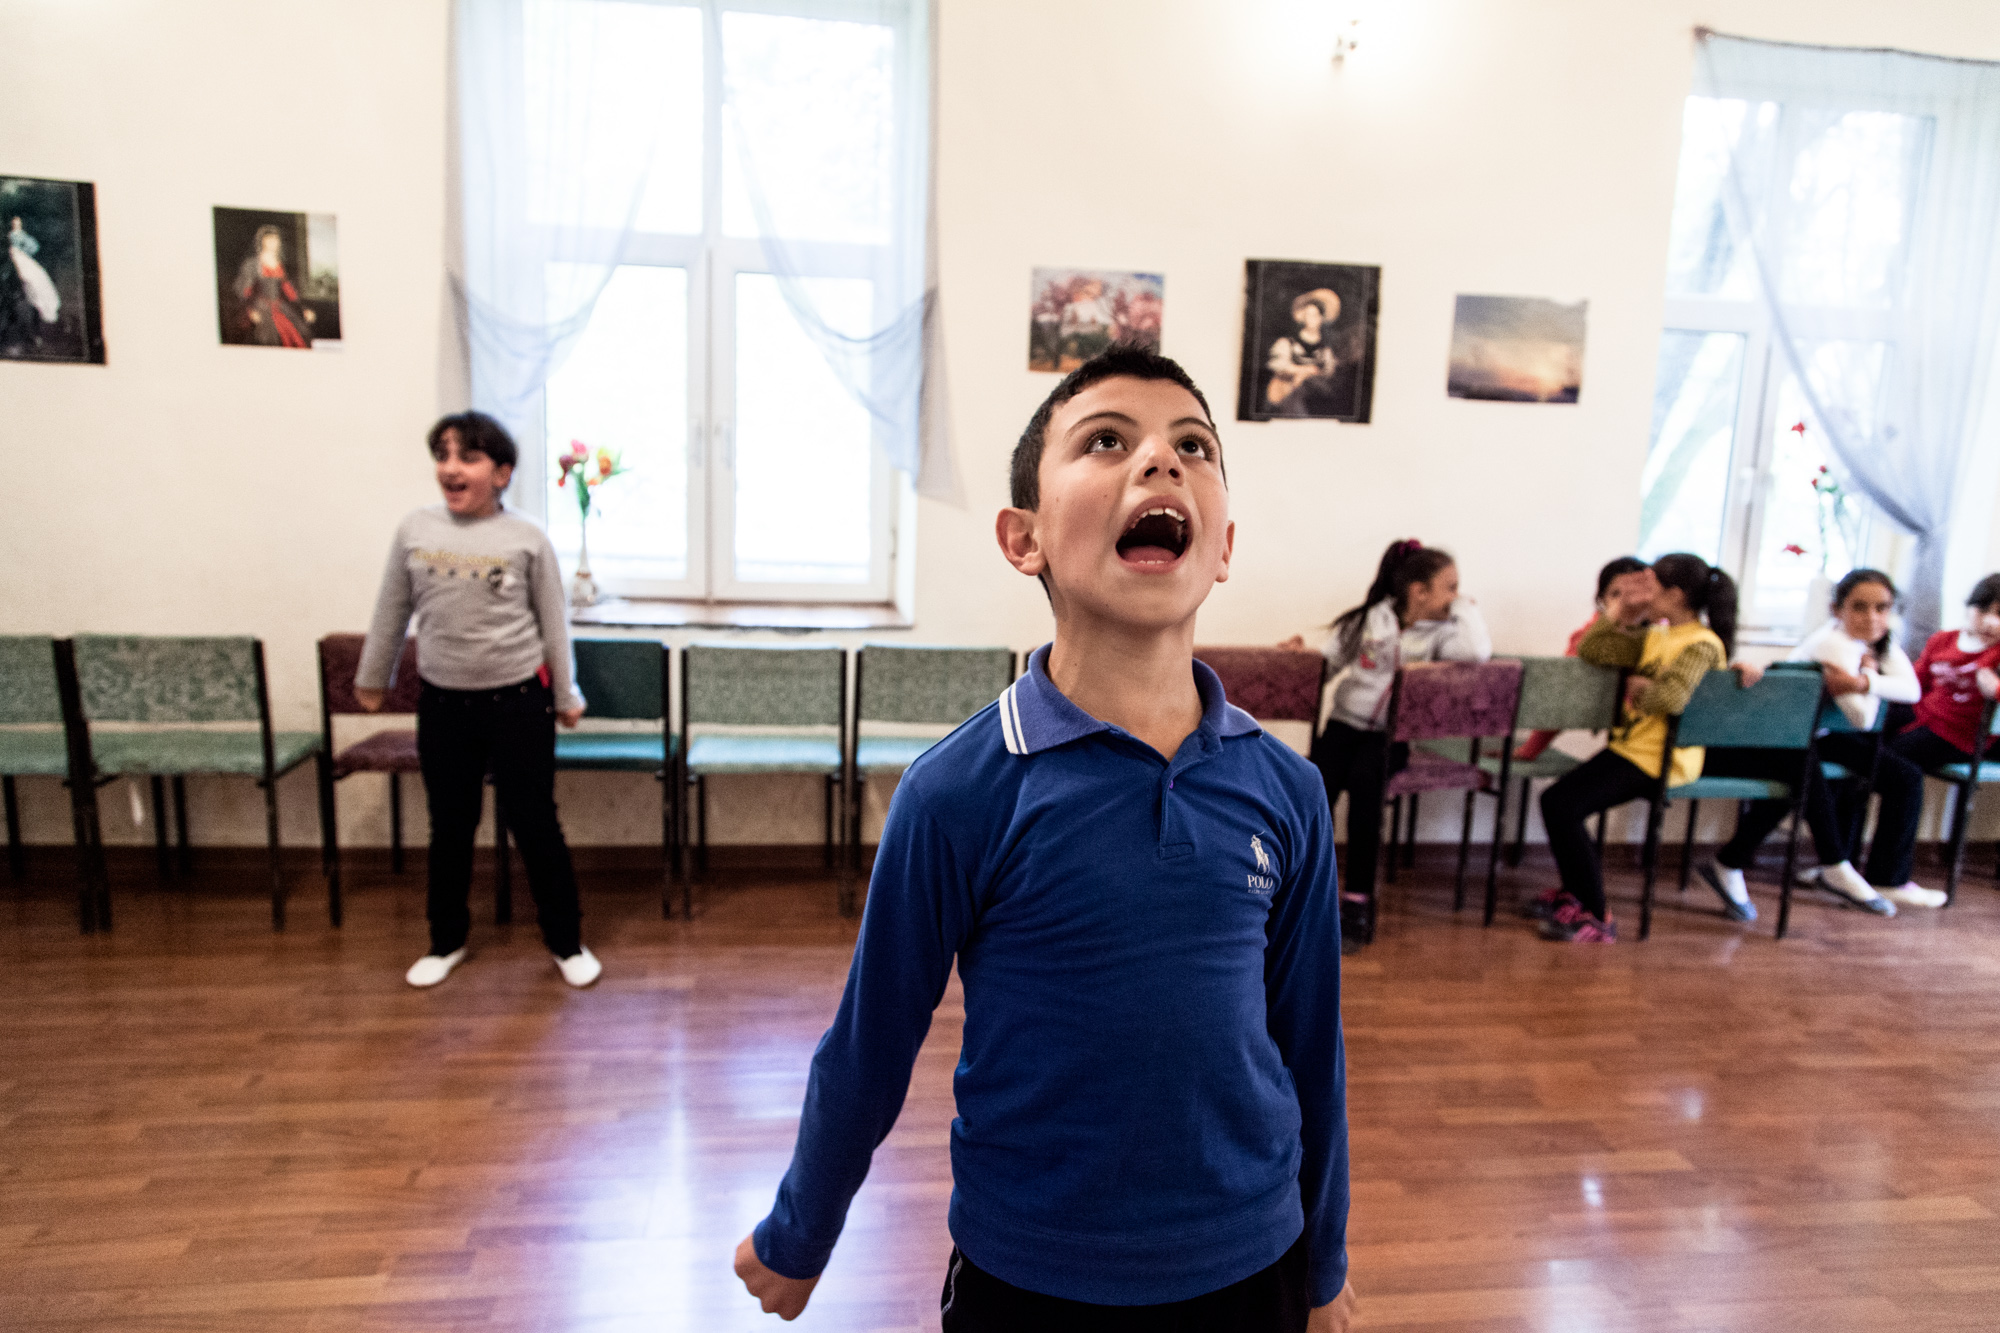  L'École d'Art a réouvert il y a peu. Une centaine d'enfants est accueillie, pour 2000 Drams mensuels (4 €). Il peuvent y suivre des cours de kanoun ( cithare), de piano, ou de danse arménienne. Dans une pièce, comme un autel: le drapeau arménien, un